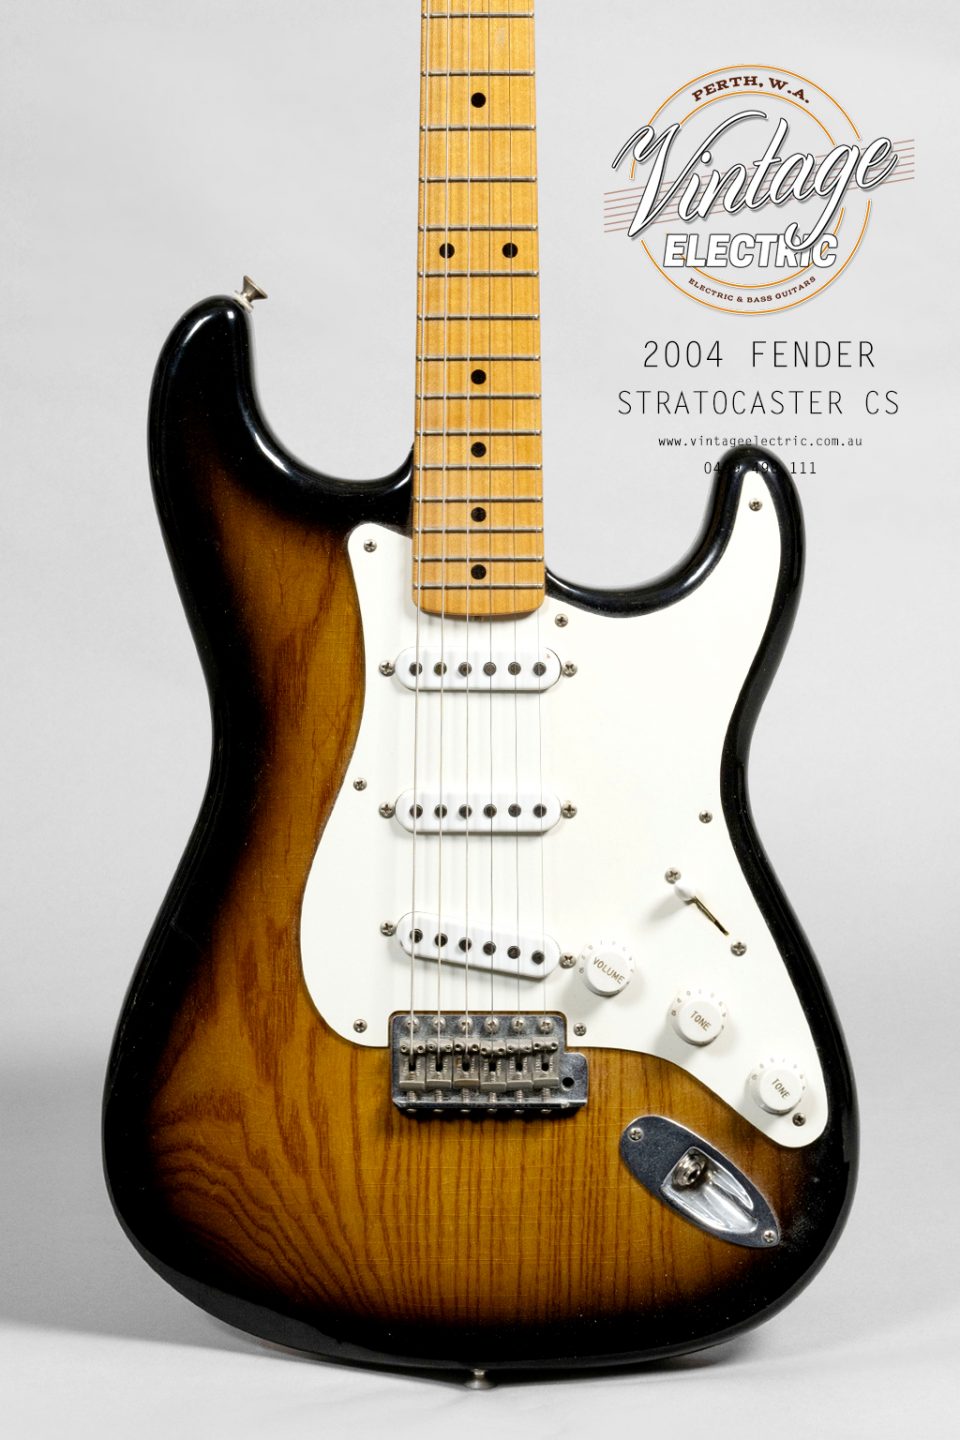 2004 Fender Stratocaster CS Kendrick Body